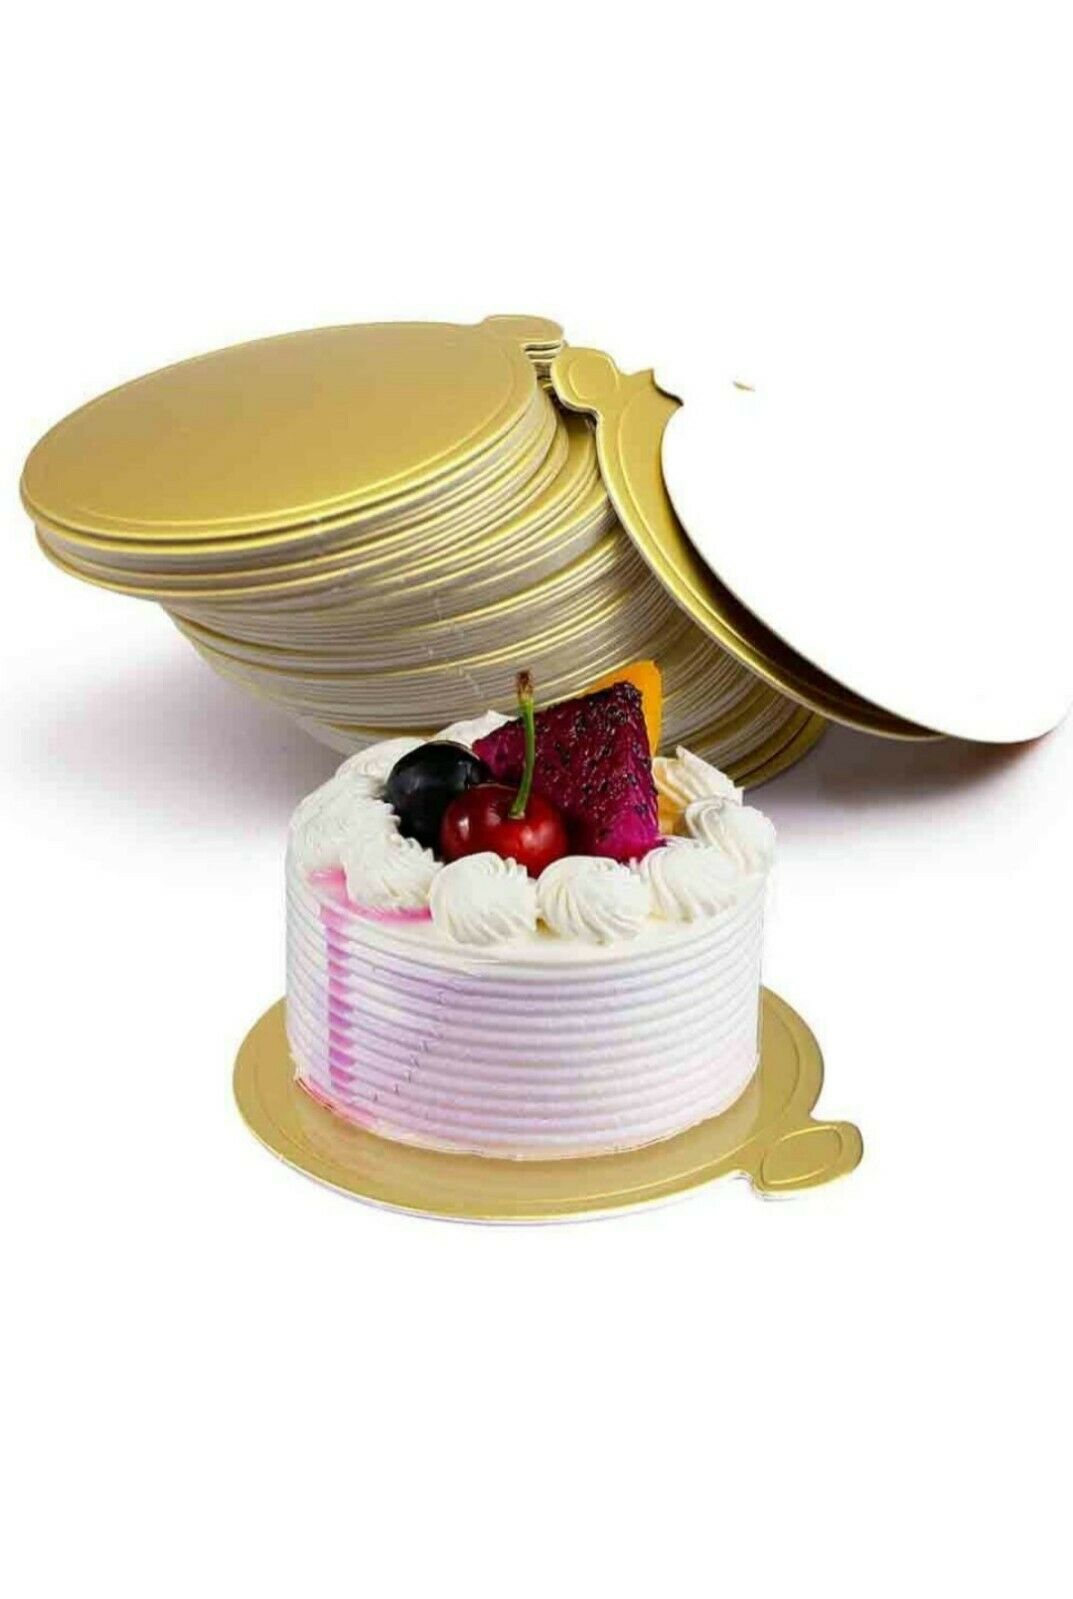 Round Golden Cardboard Cake Base,100pcs Paper Plates Circle 3.5x 4 . C5